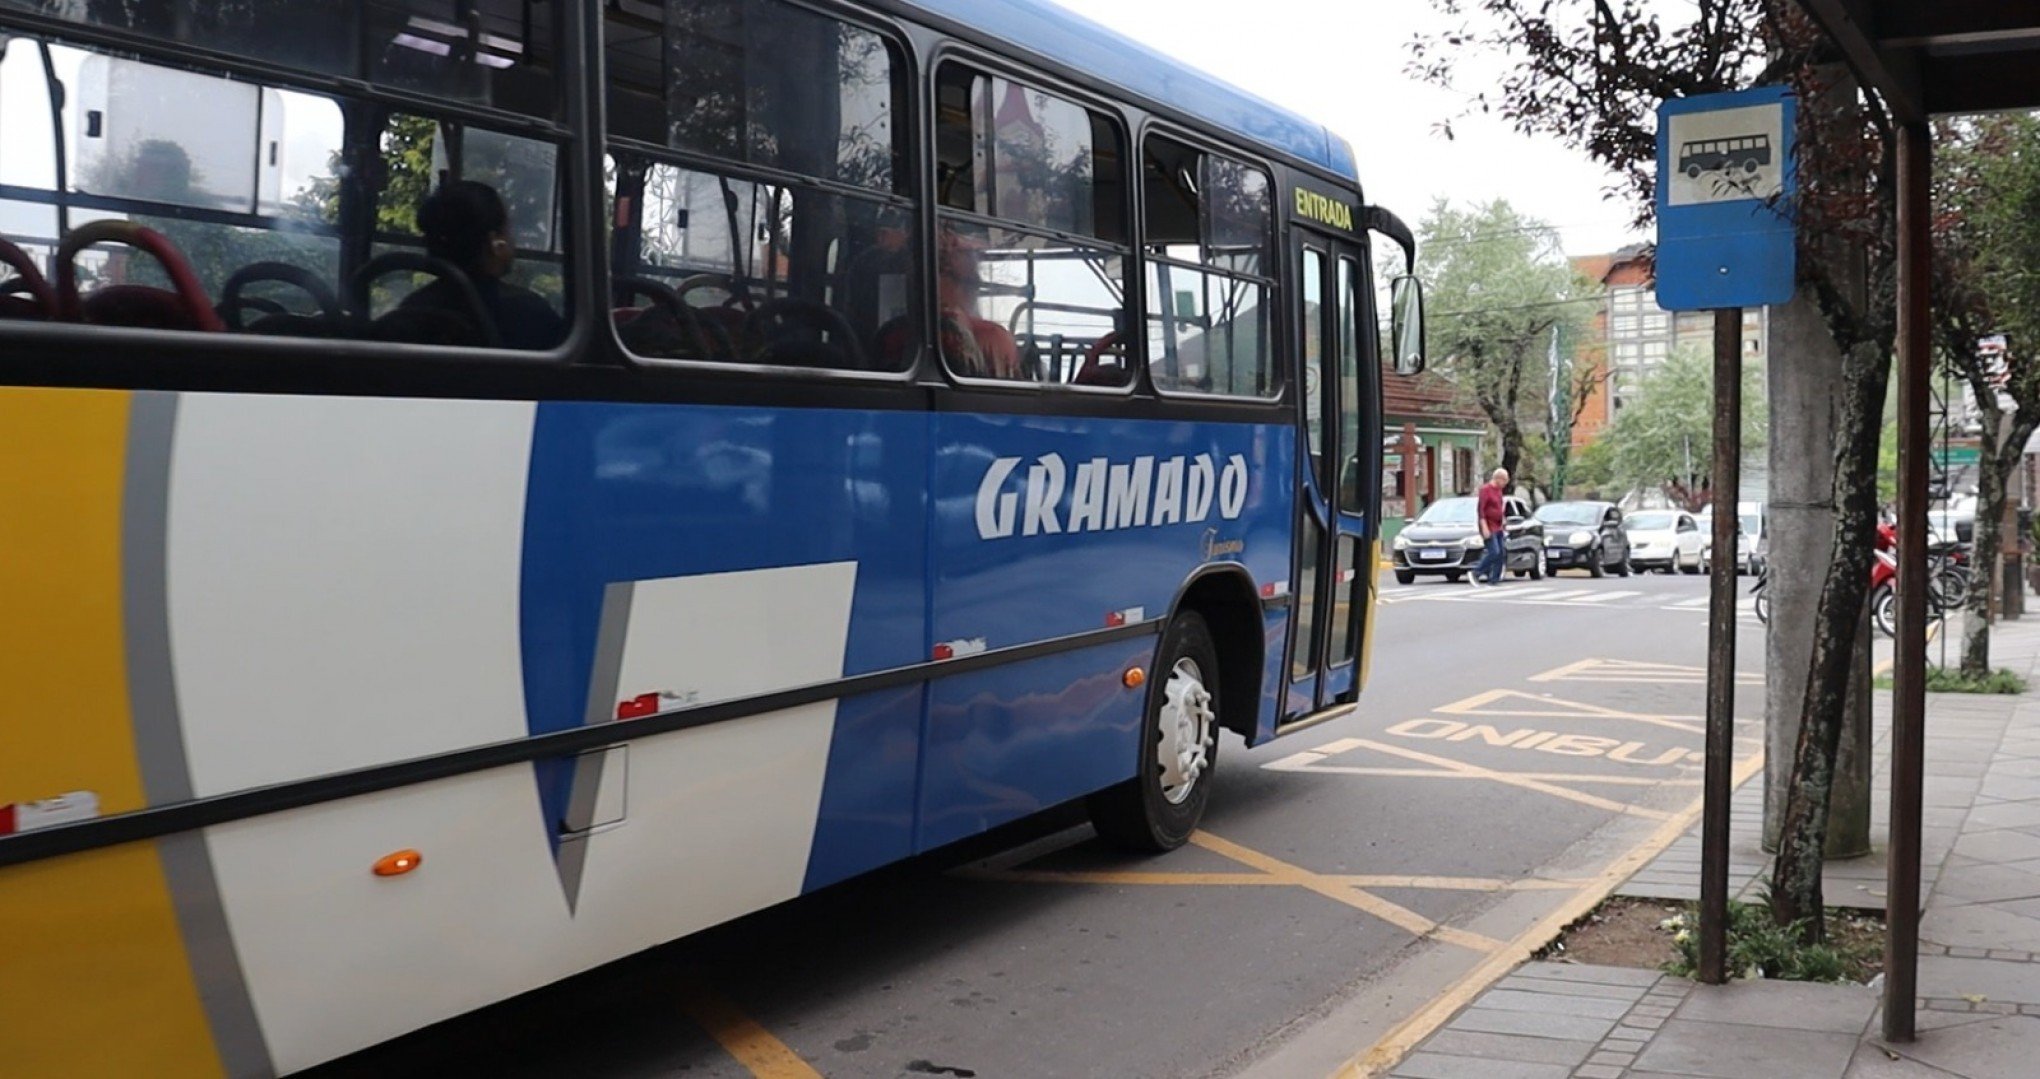 Gratuidade na passagem de ônibus em Gramado é válida até fim de dezembro; veja os dias de isenção